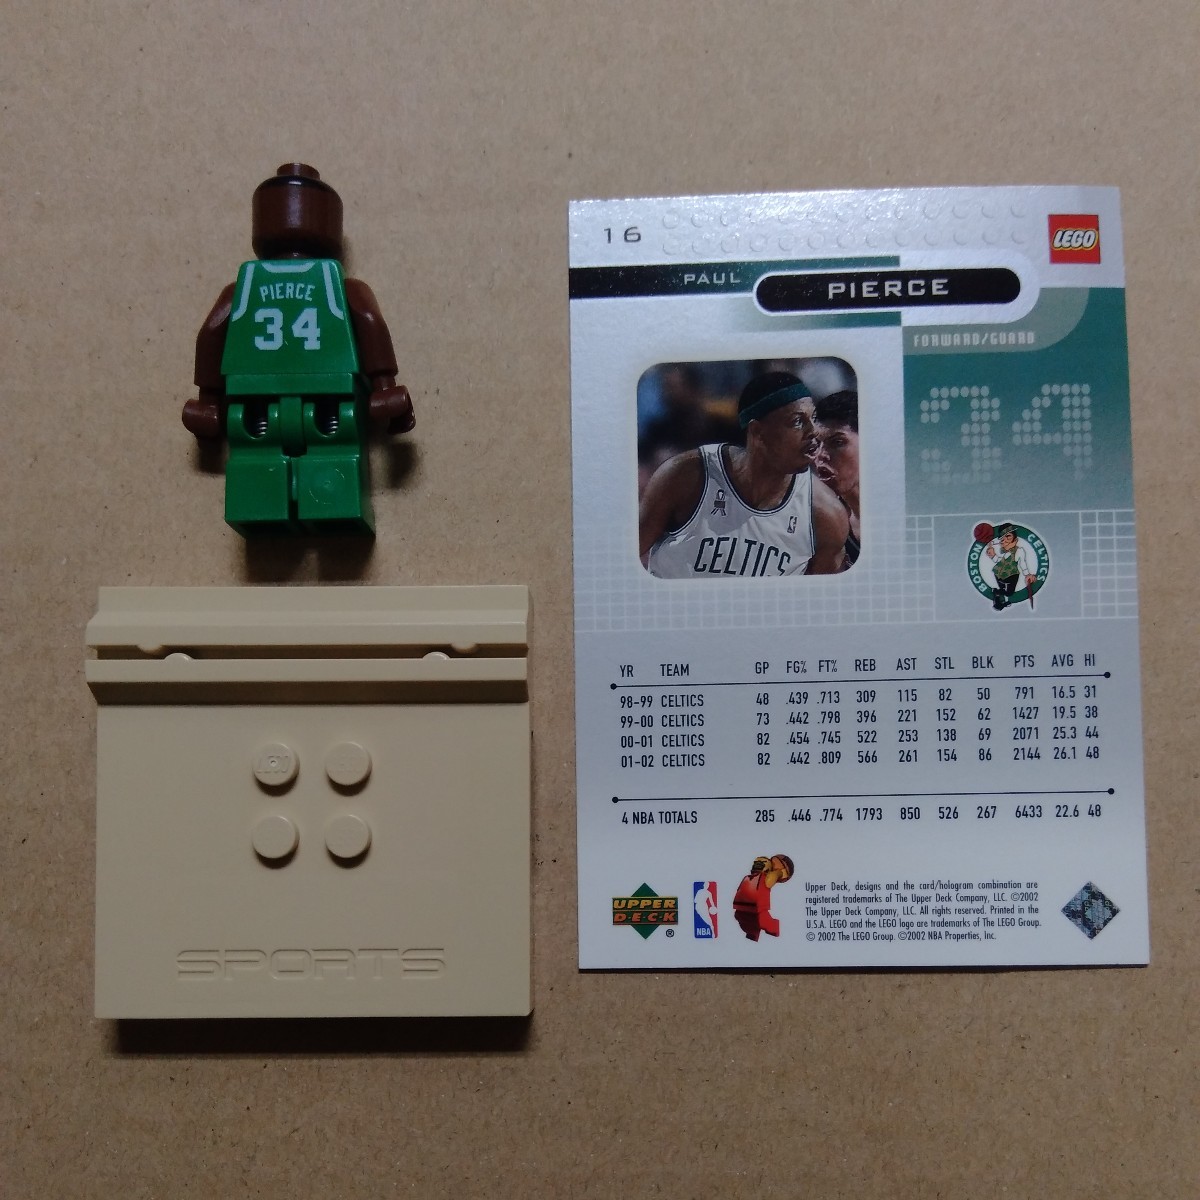 6-12 3565 pierce 絶版品 LEGO sports NBA バスケットボール レゴ スポーツ ブロック フィグ フィギュア_画像2